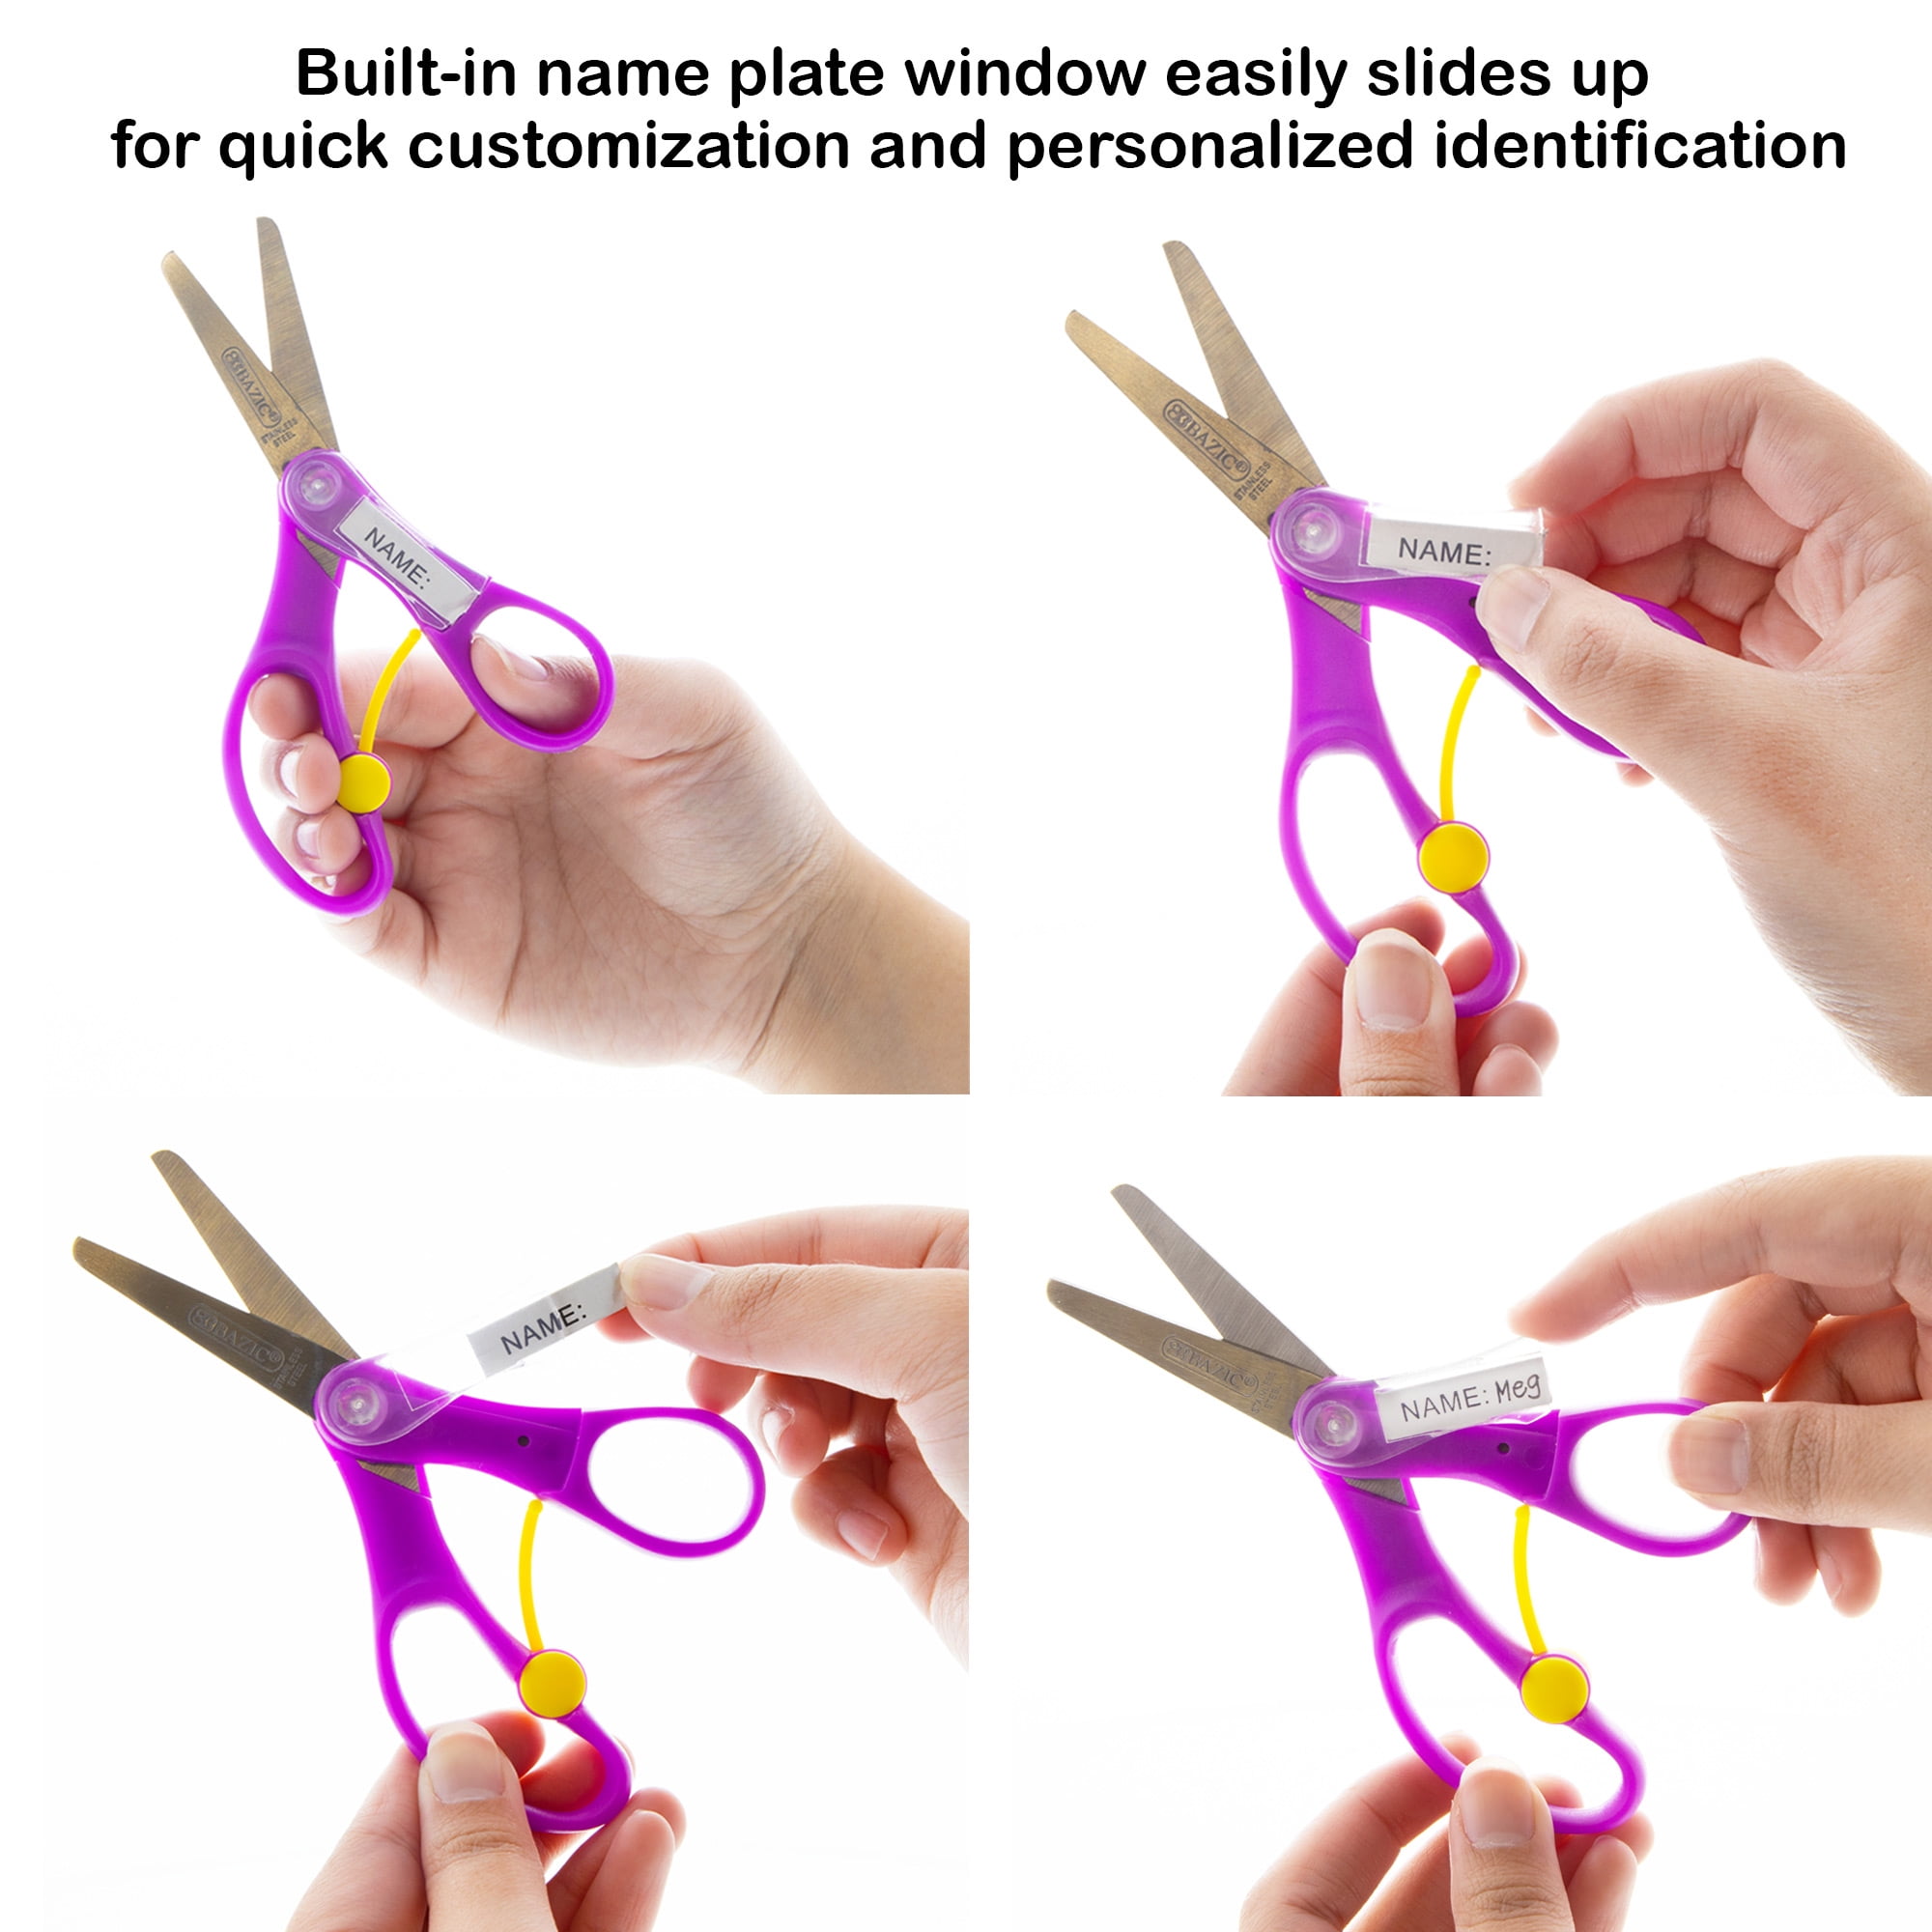 Wholesale 5 Blunt Tip Scissors – BLU School Supplies